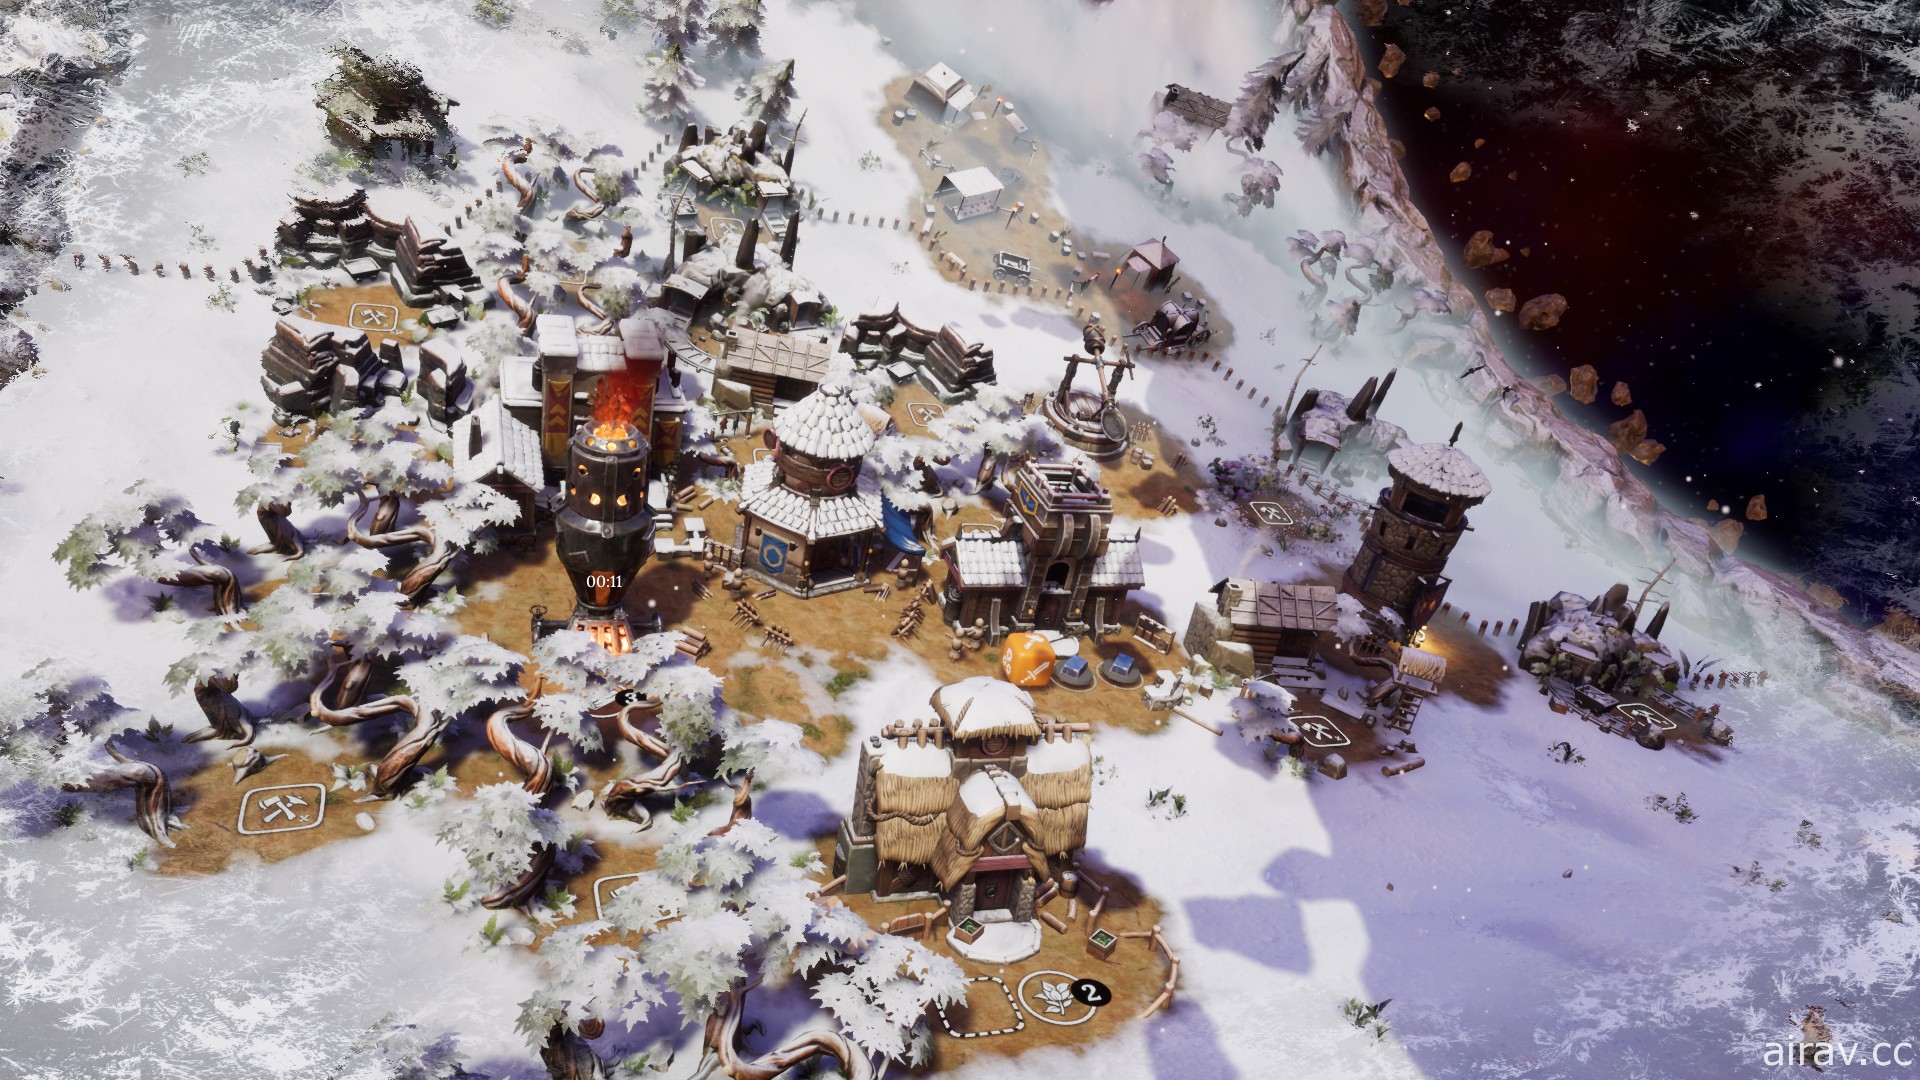 《掷骰创世》PC 版迎接耶诞节  21 日将推免费更新内容、带来全新天气系统